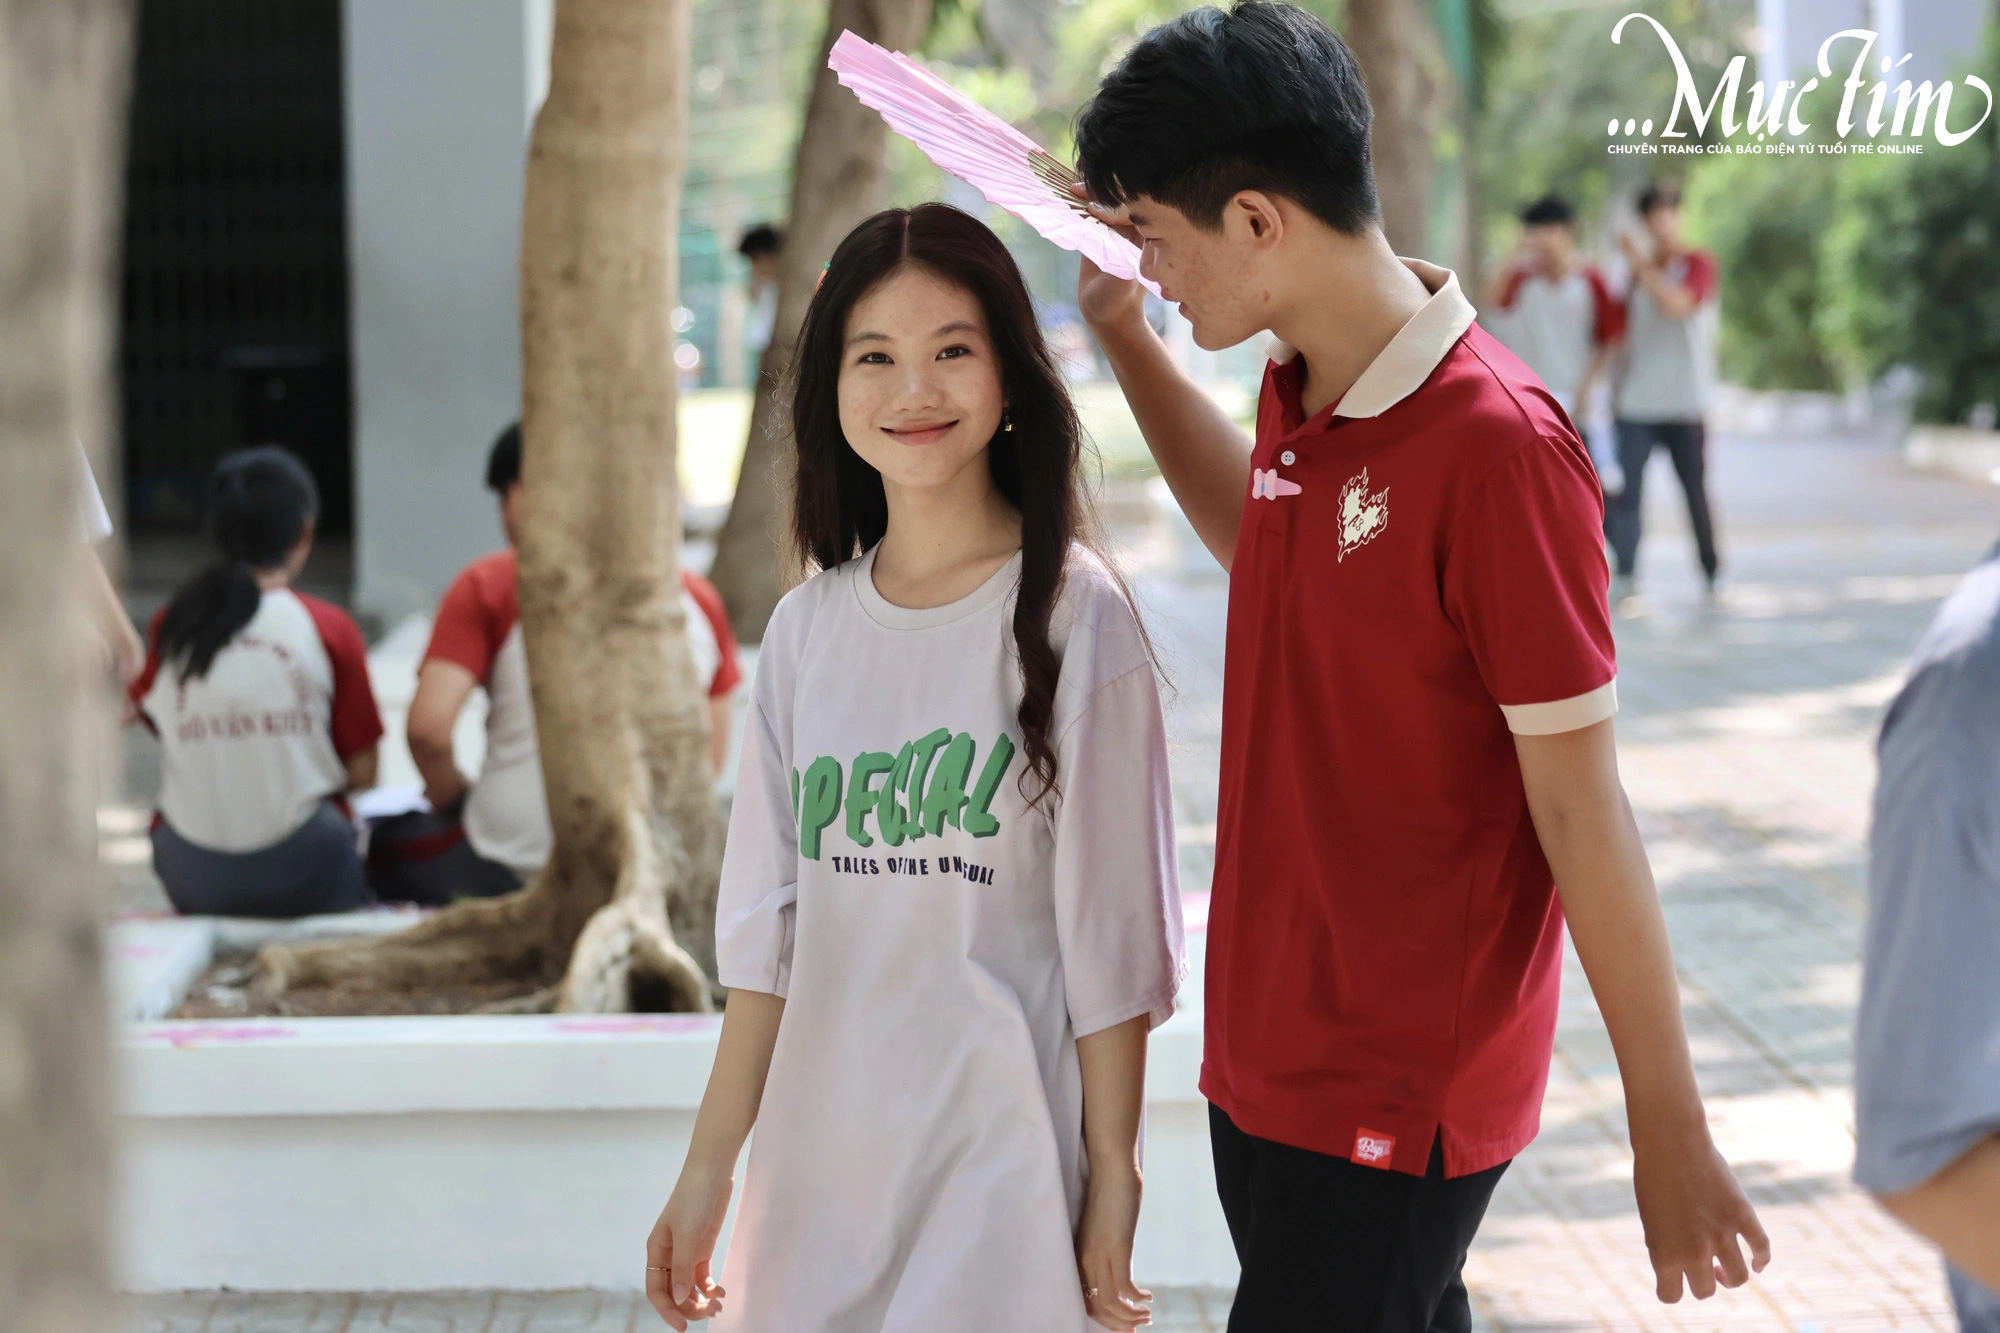 Bộ sưu tập cặp đi học độc lạ của Trường THPT Võ Văn Kiệt vào ngày thứ 5 hạnh phúc- Ảnh 1.